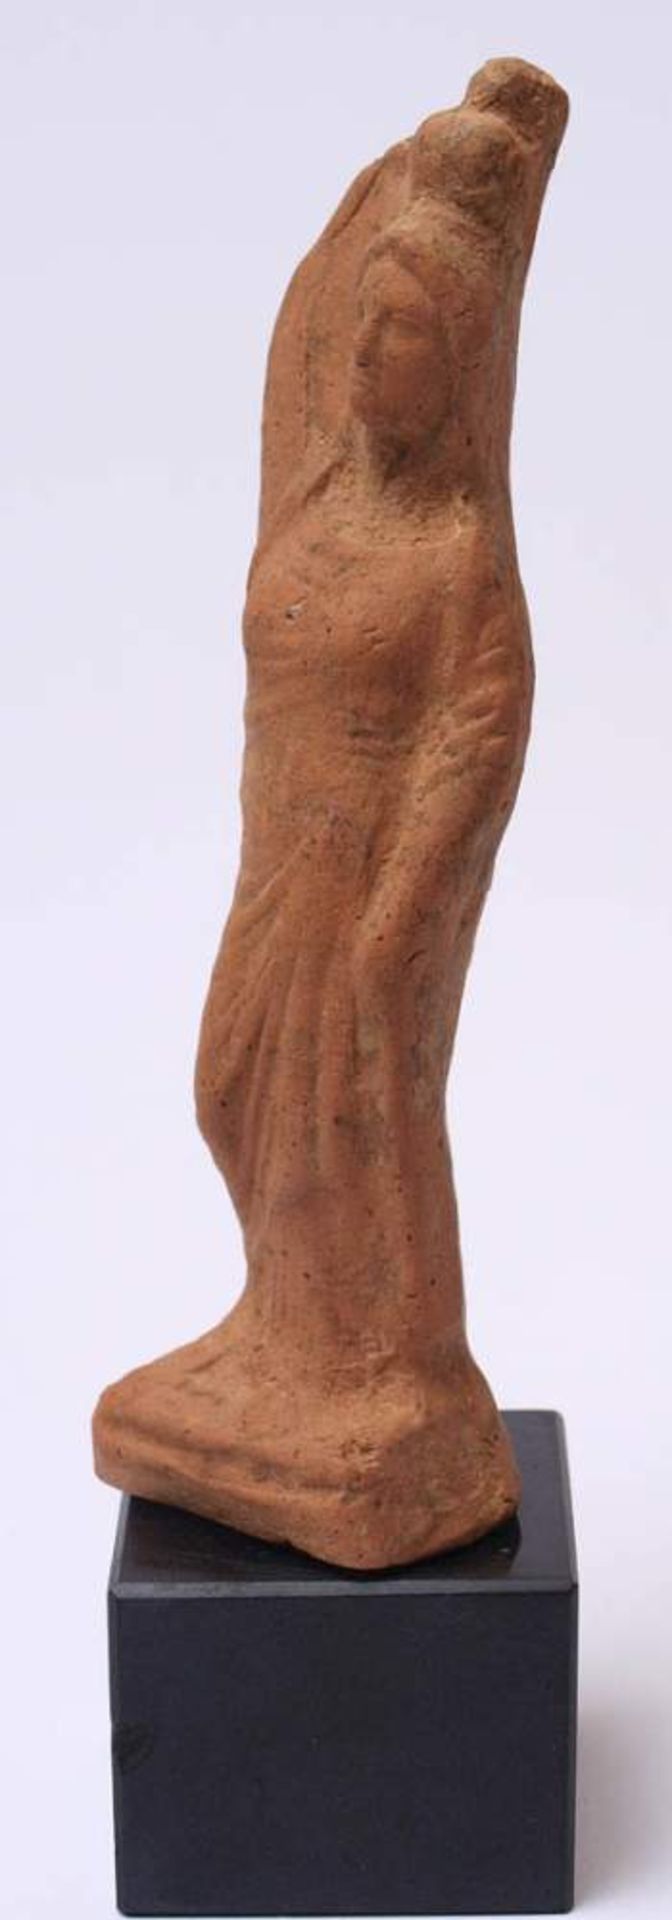 Griechische Hydrophore, wohl 4.Jhdt. v.Chr.Roter Ton, mit rückseitigem Brennloch. H.16cm ohne - Bild 4 aus 5